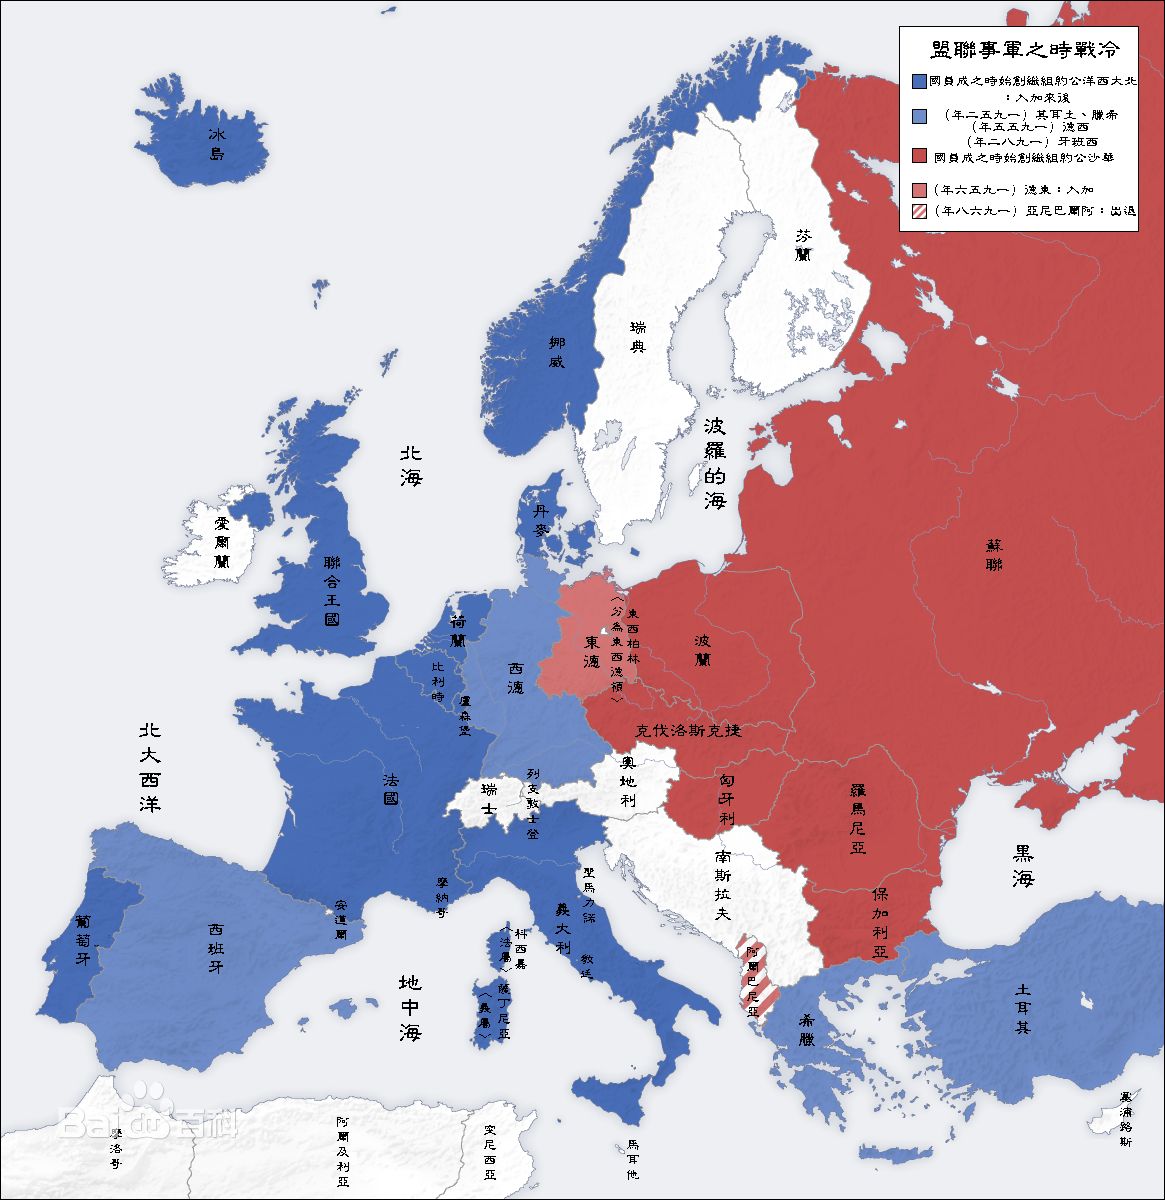 二戰之後的歐洲國家行政劃分